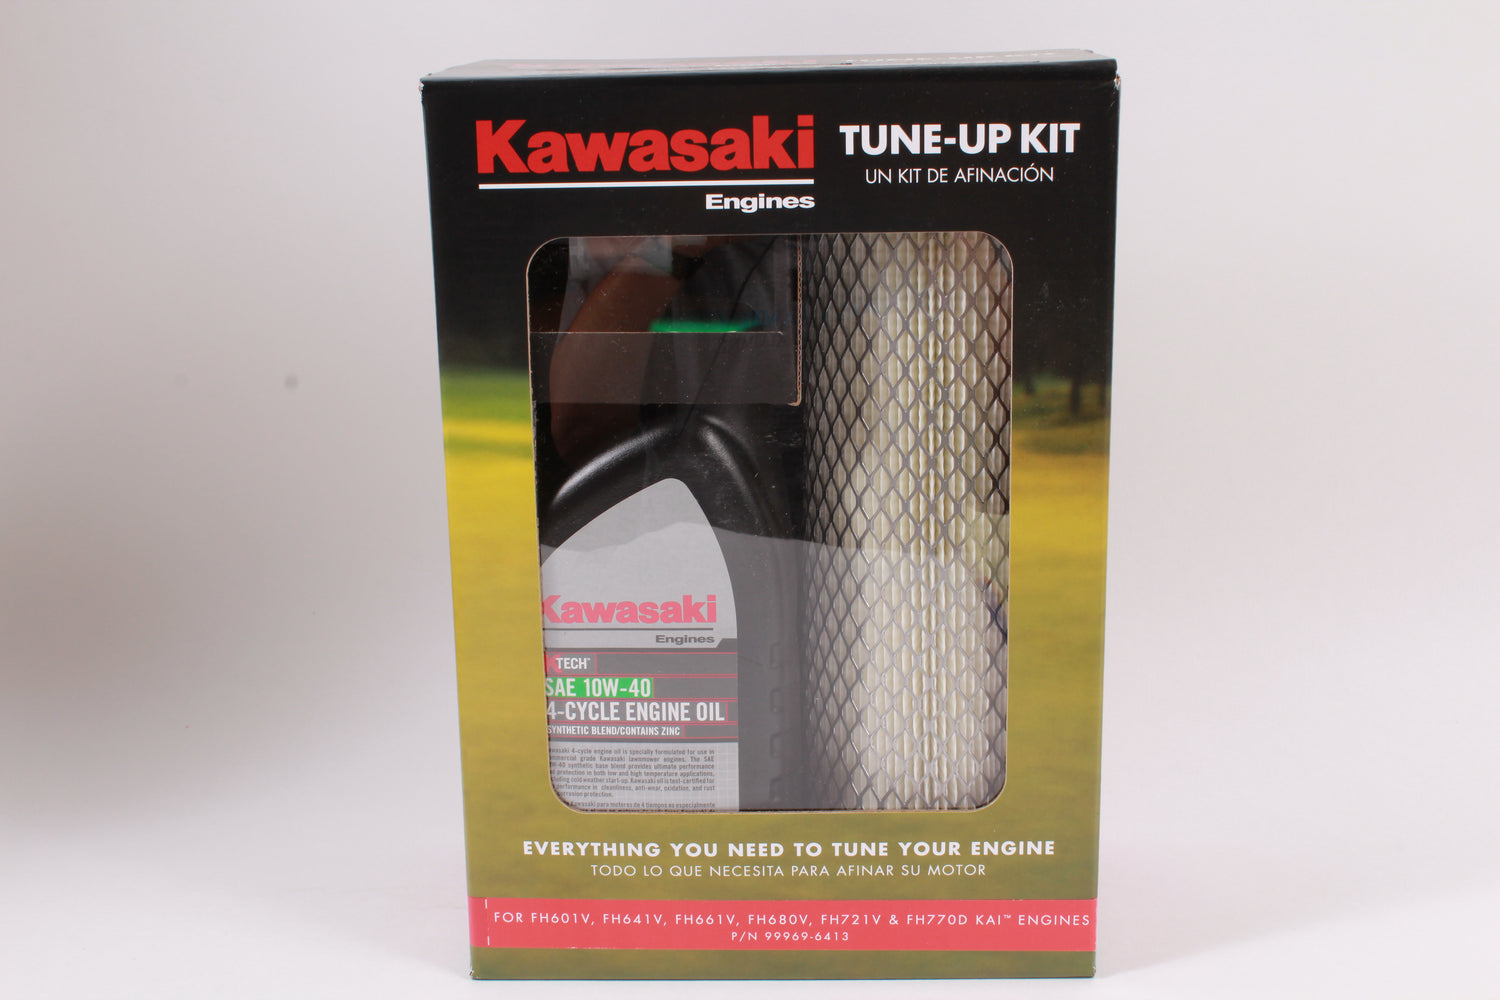 Kawasaki 99969-6413 Tune Up Kit For FH601V FH641V FH661V FH680V FH721V FH770 KAI